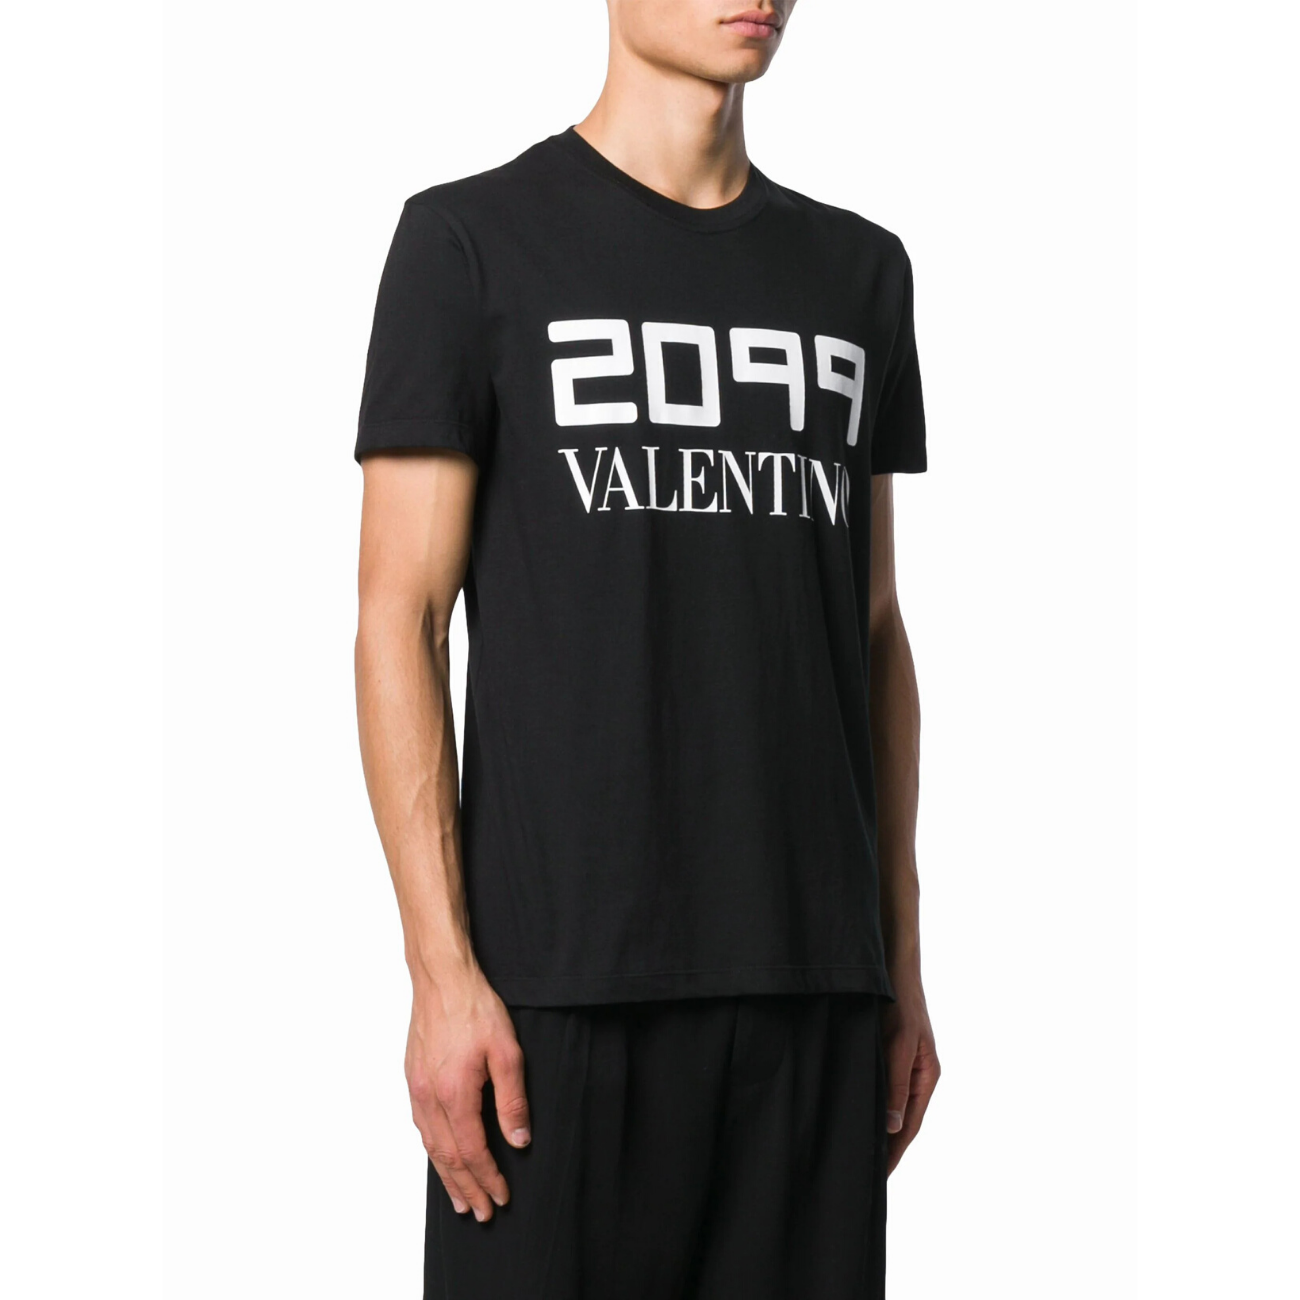 Valentino "2099" Logo Men's T-Shirt